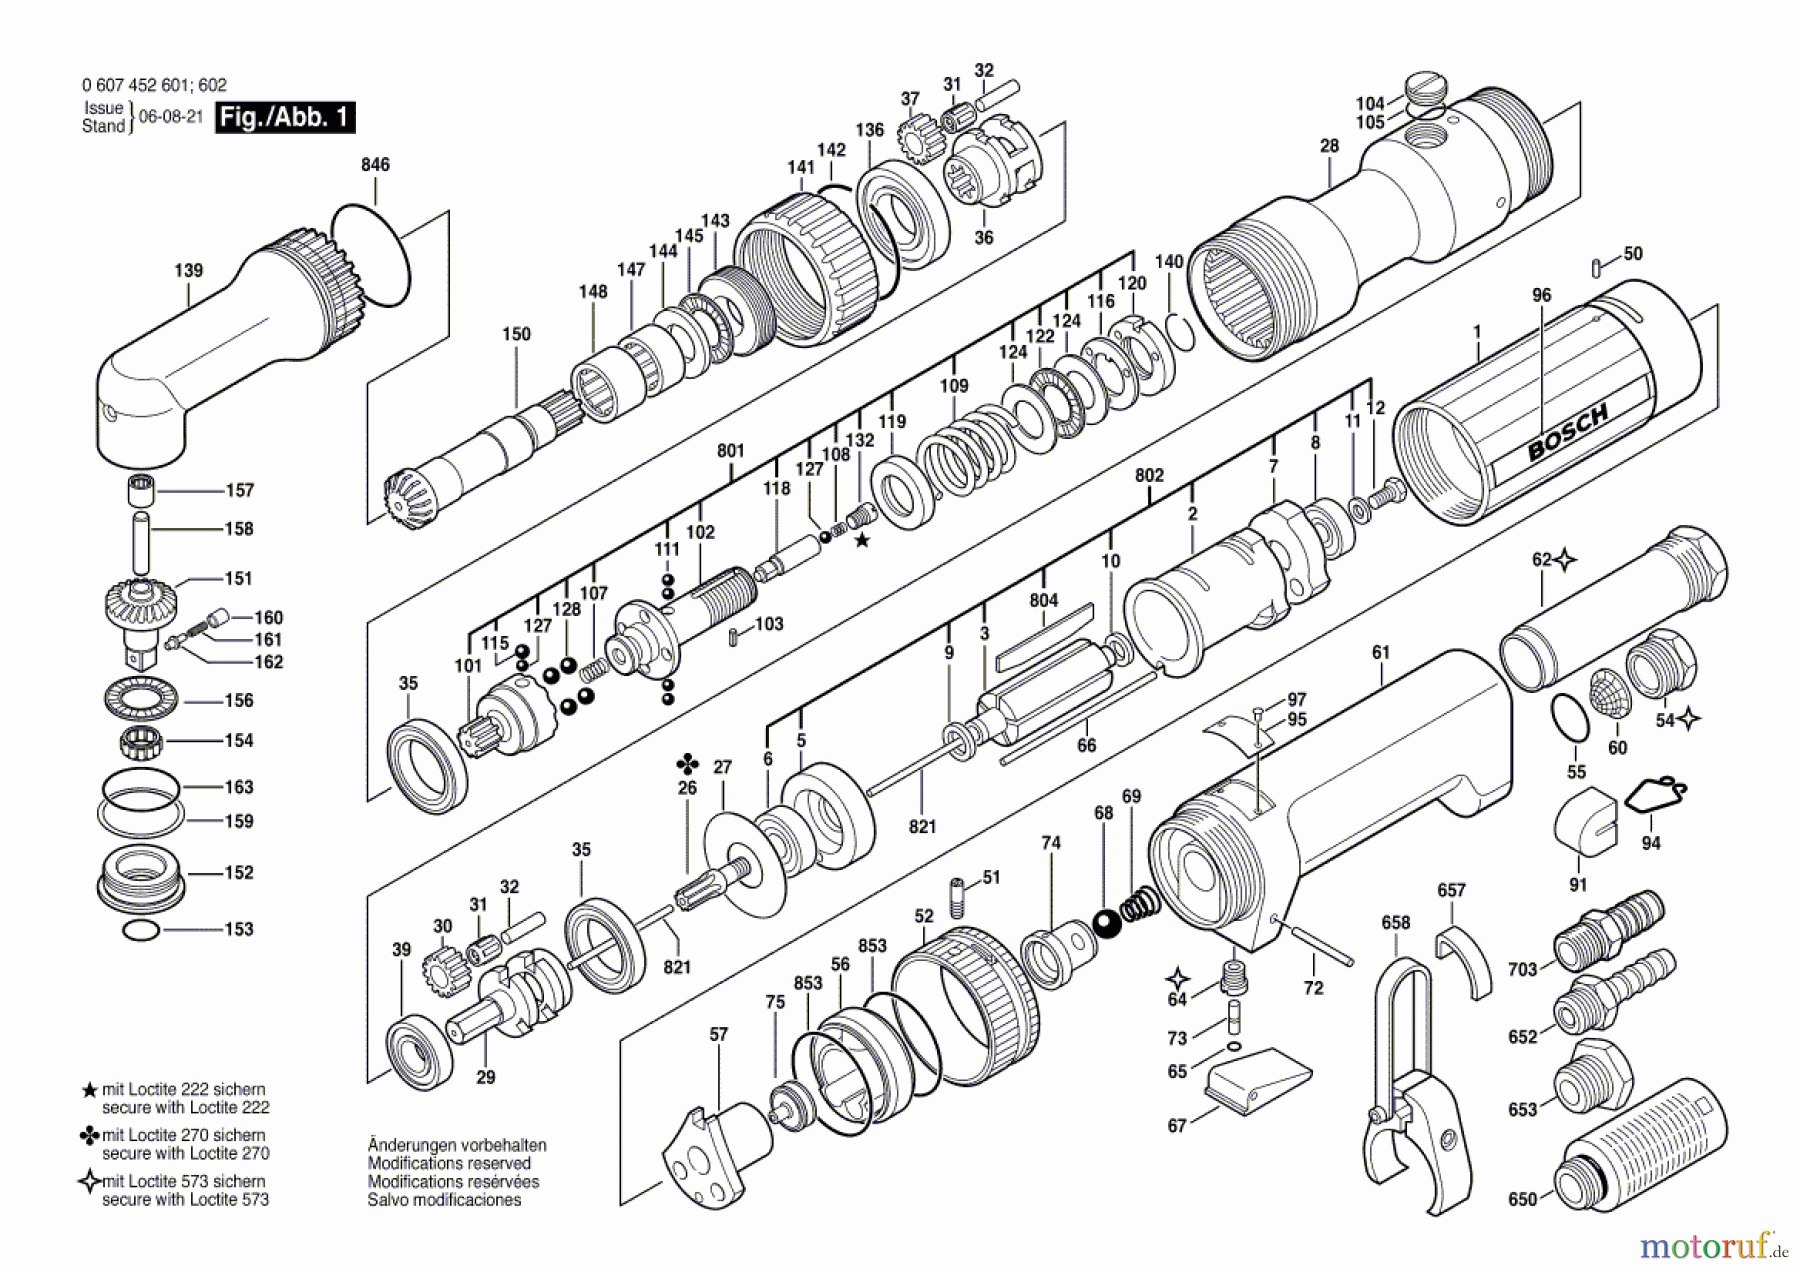  Bosch Werkzeug Schrauber 550 WATT-SERIE Seite 1